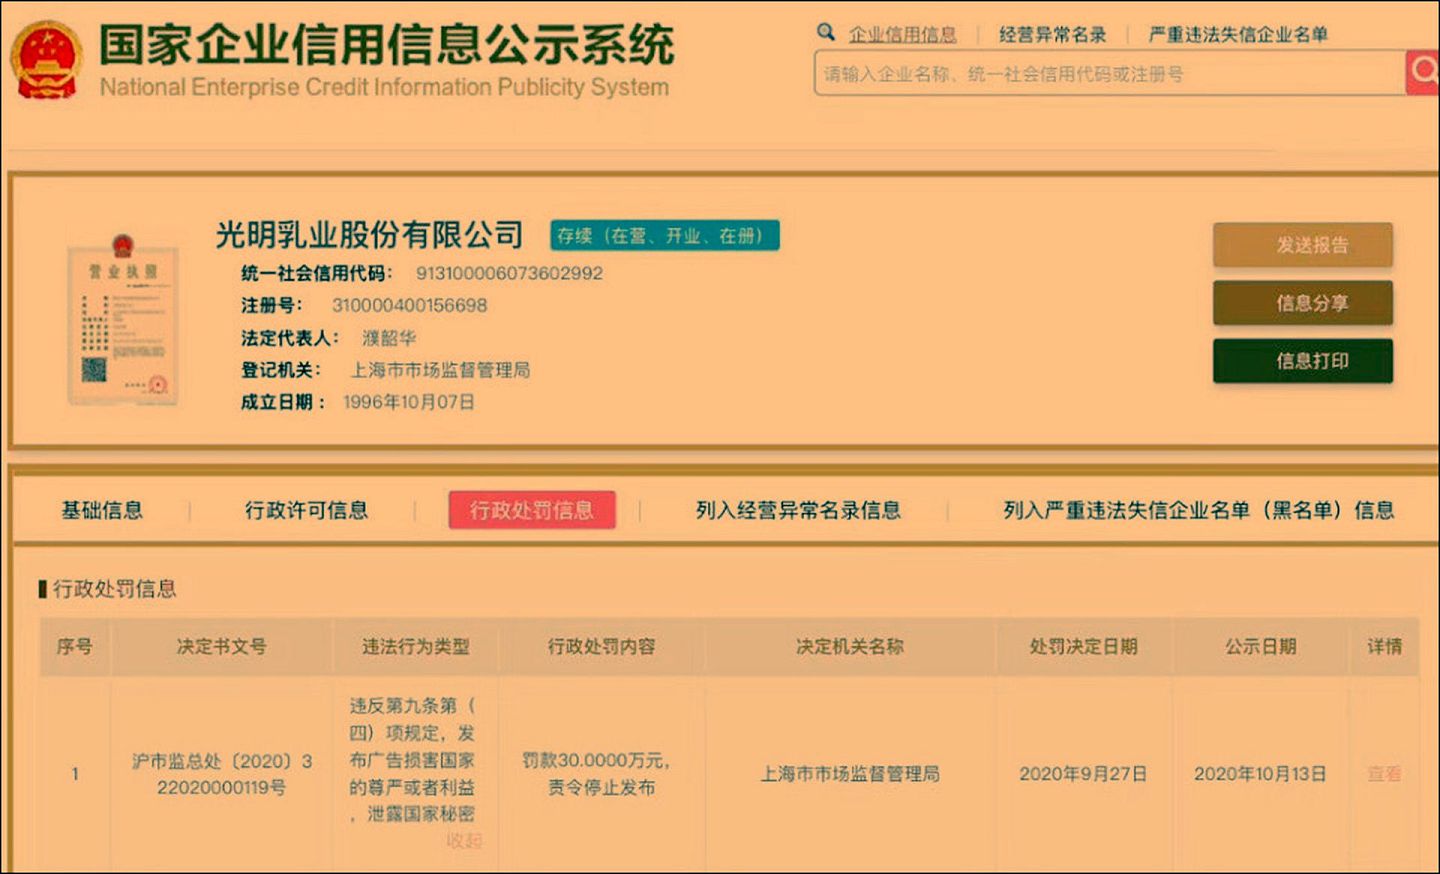 中国企业信用信息公示系统公开光明乳业遭行政处罚的信息。 （中国企业信用信息公示系统）